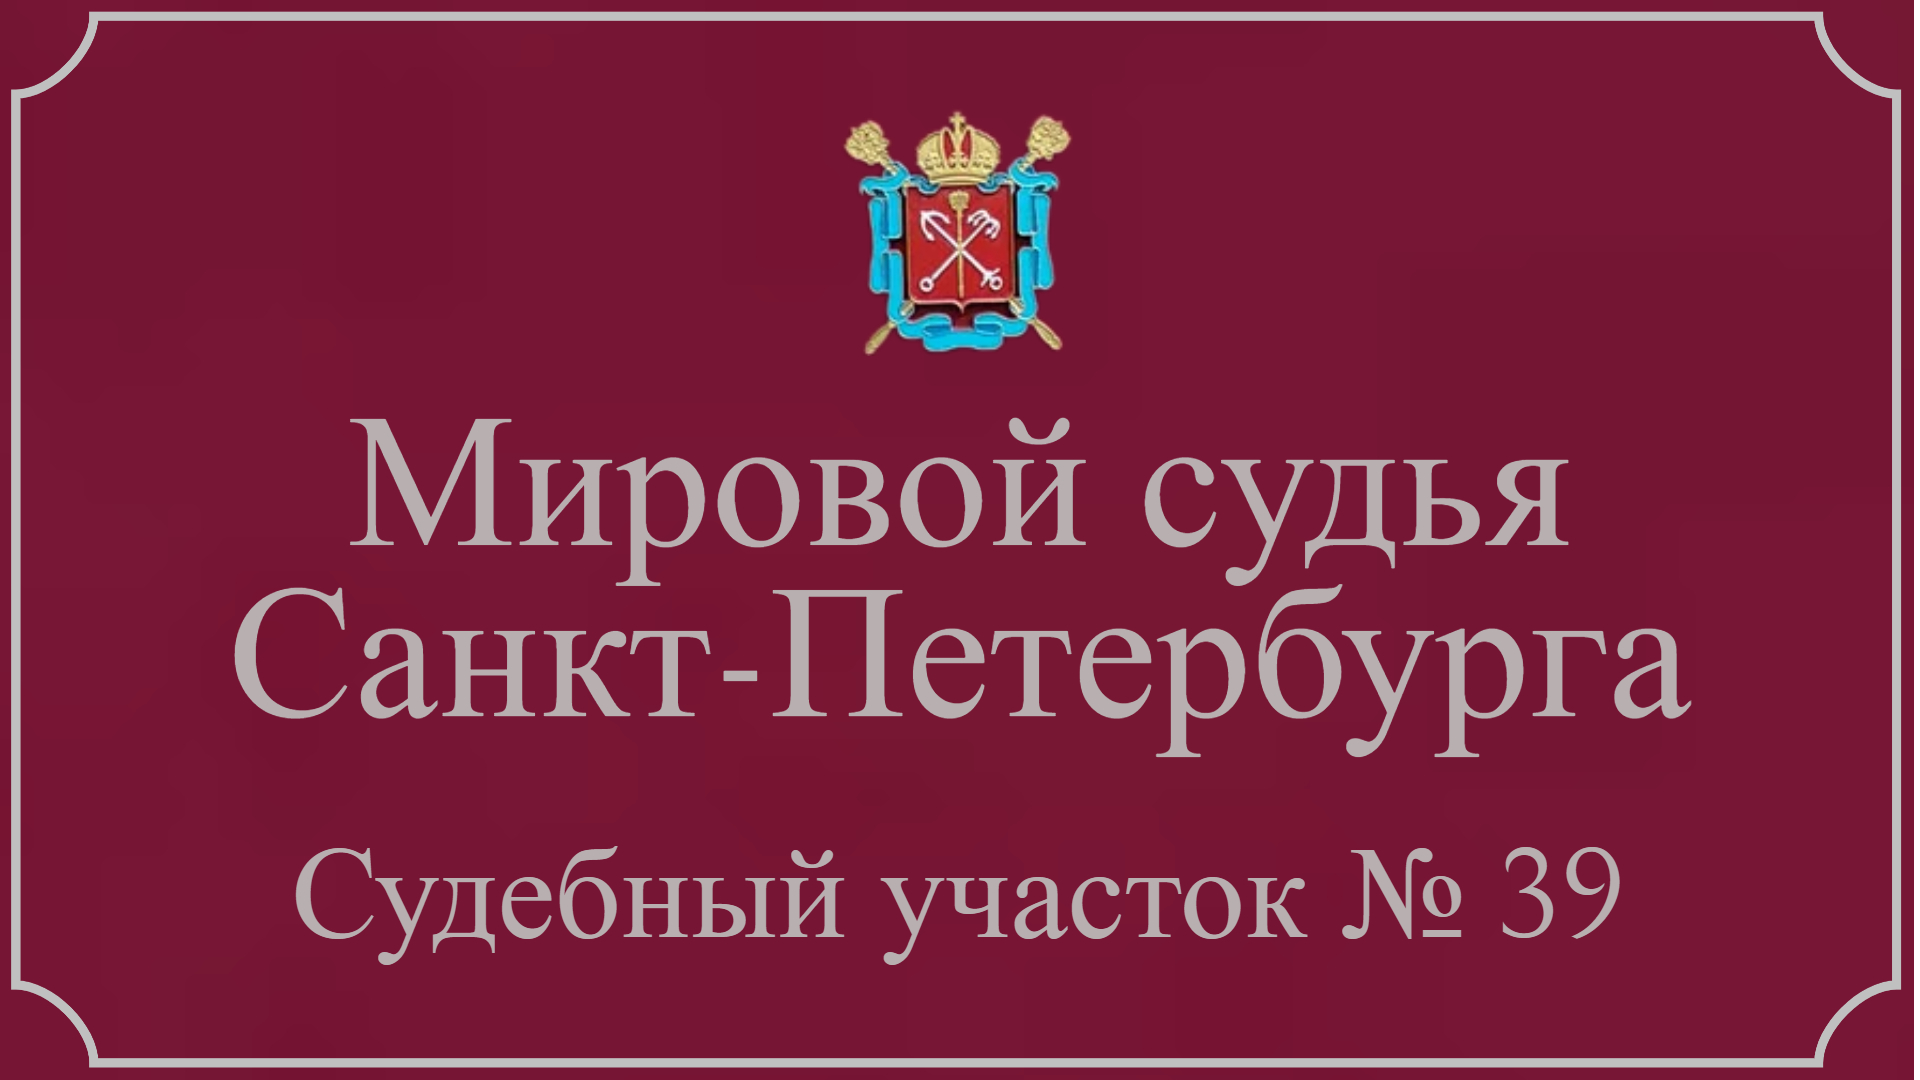 Информация по 39 судебному участку в Санкт-Петербурге.